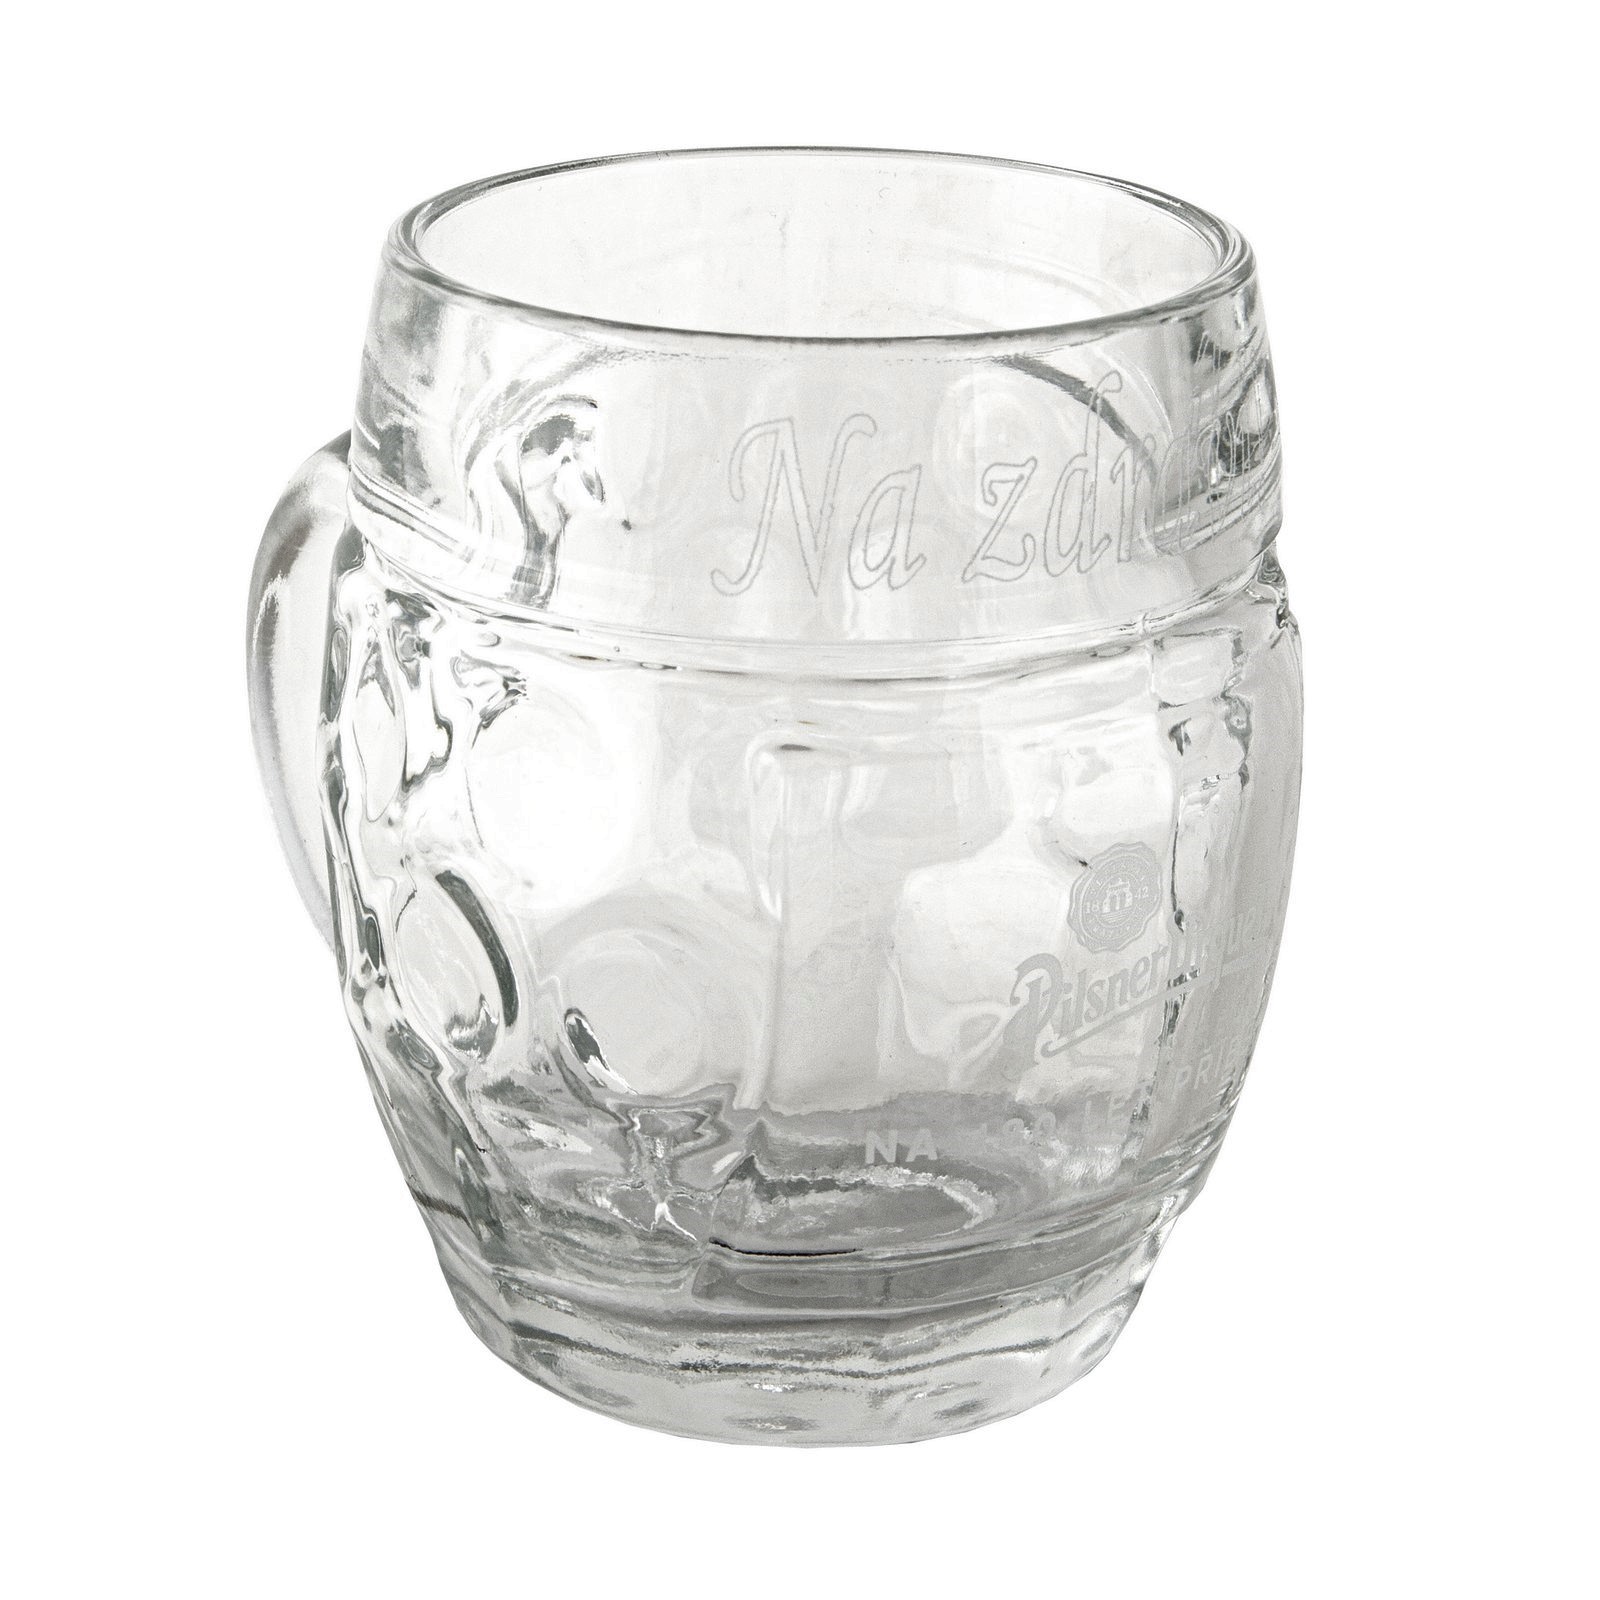 Pilsner Urquell 0.3 Glass mit Widmung - Ausgabe 180 Jahre